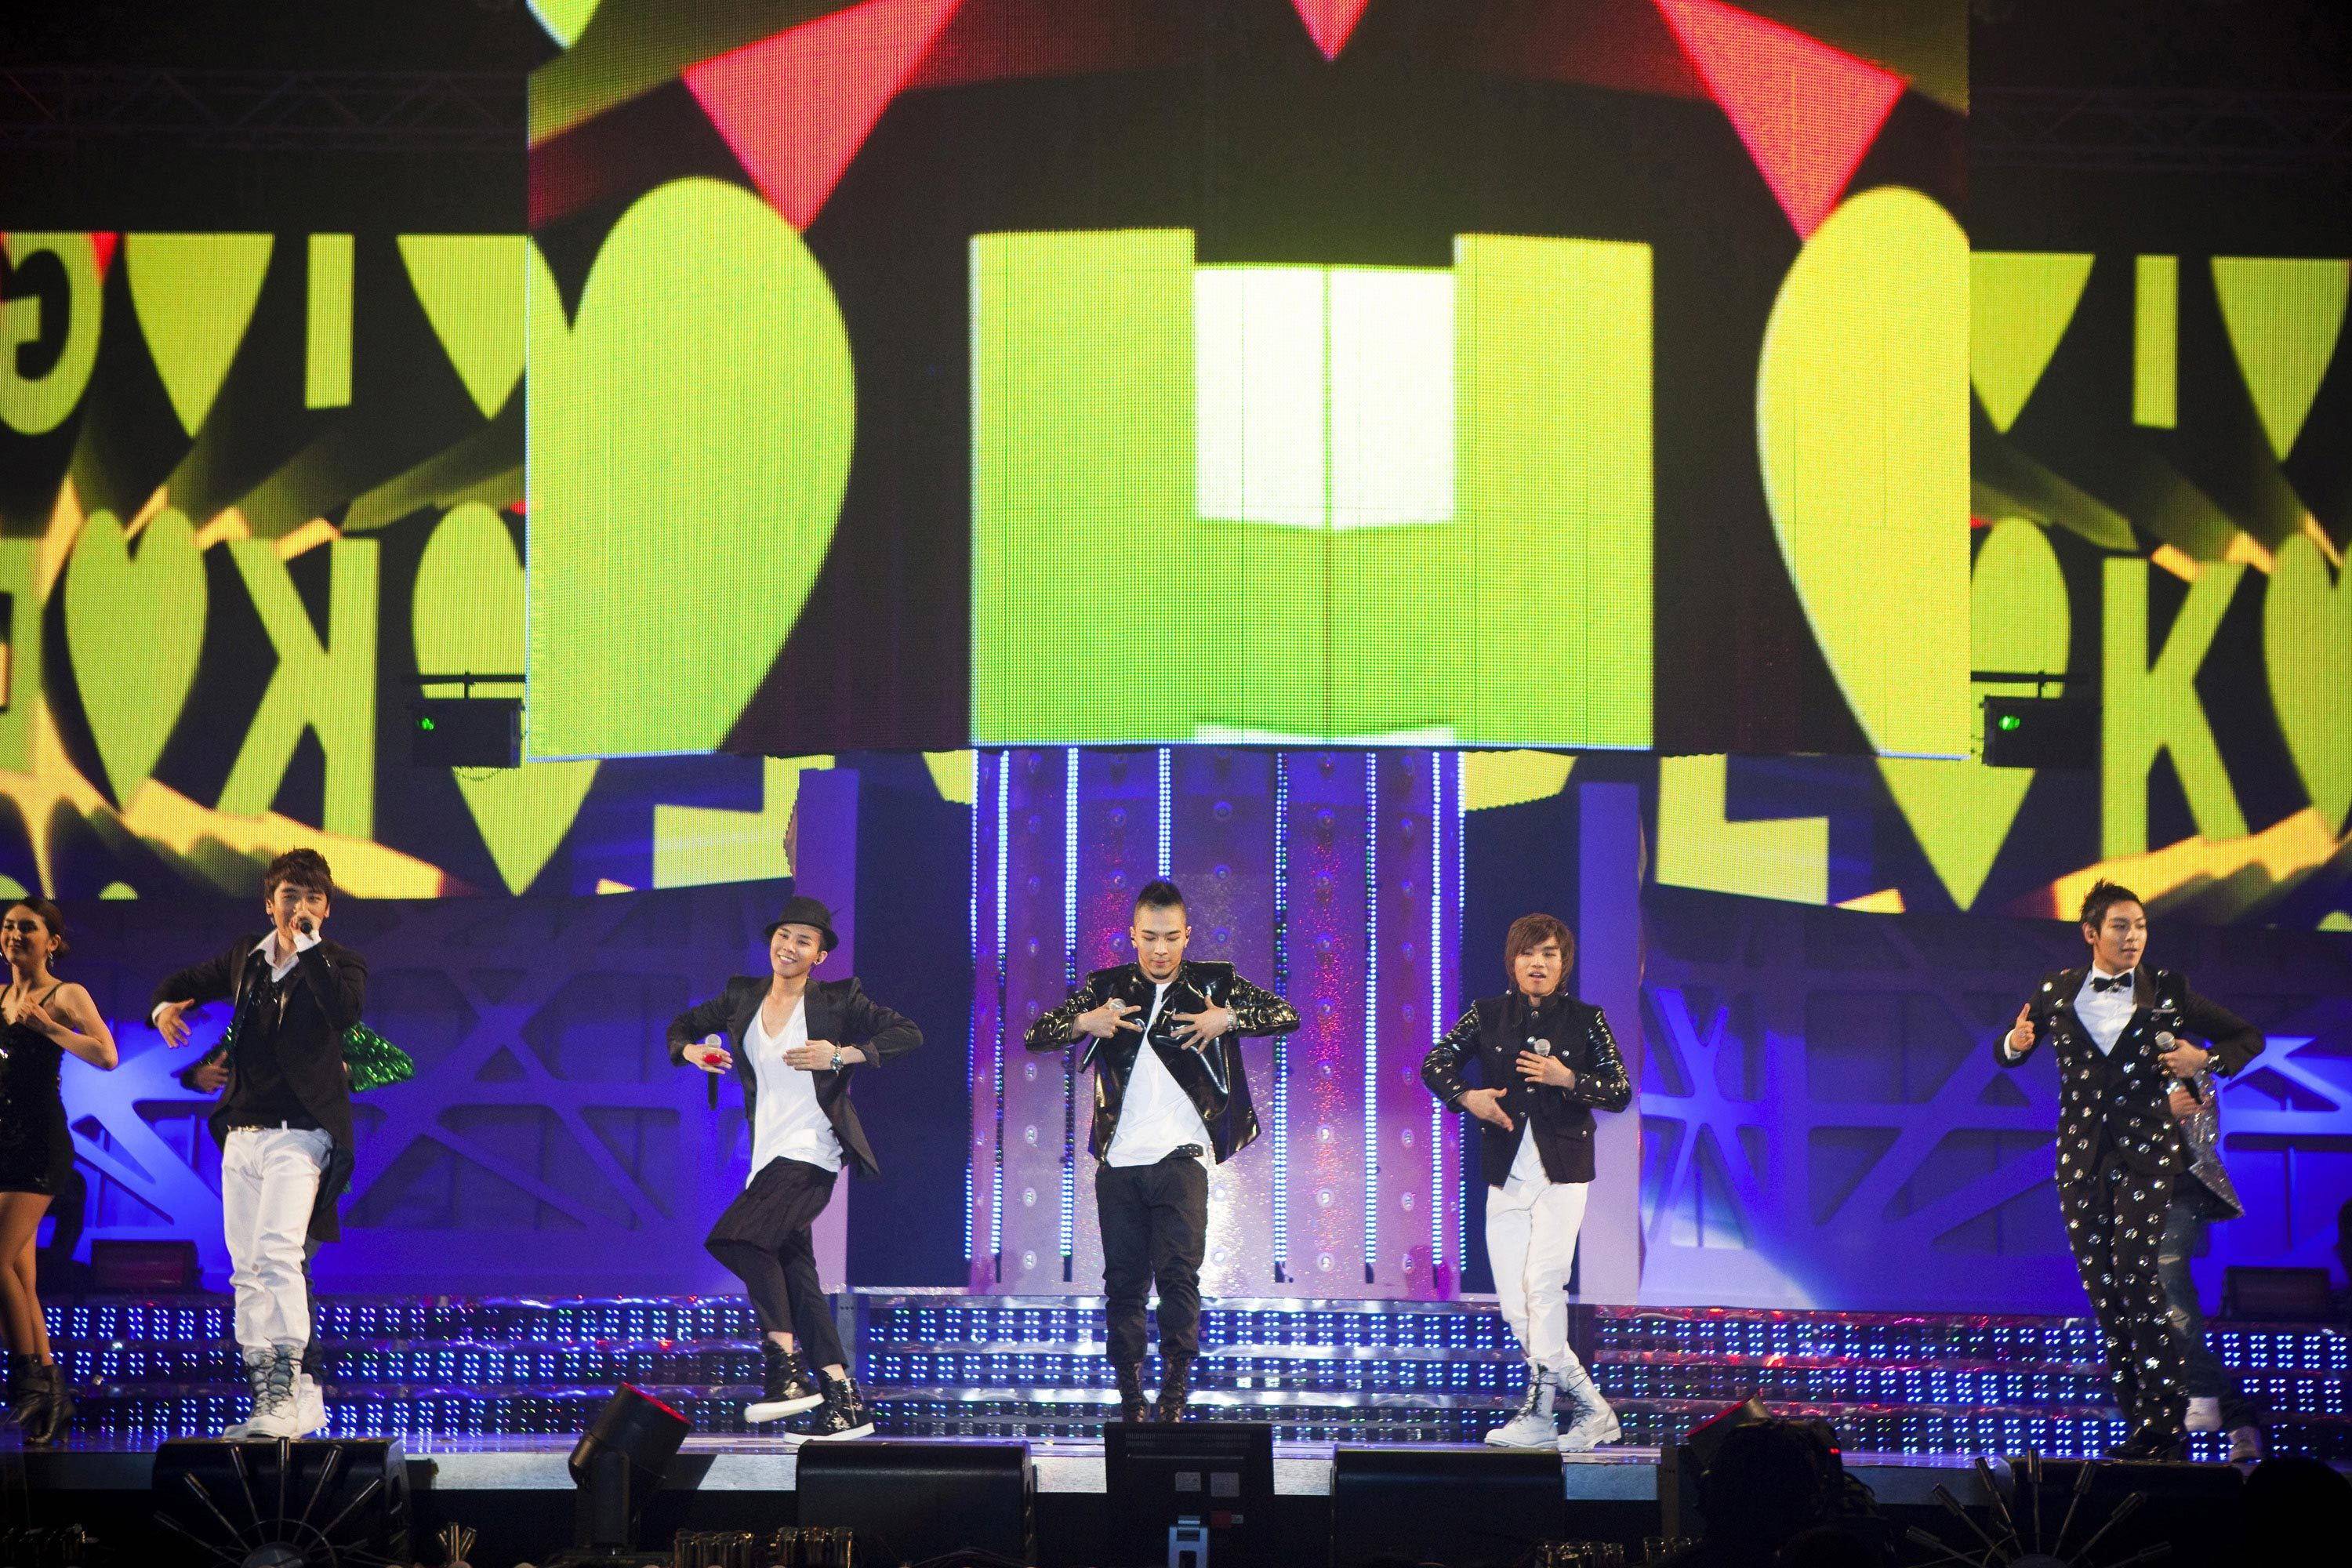 Prev. Big Bang Big Show 2010 Live Concert 3D (2010 